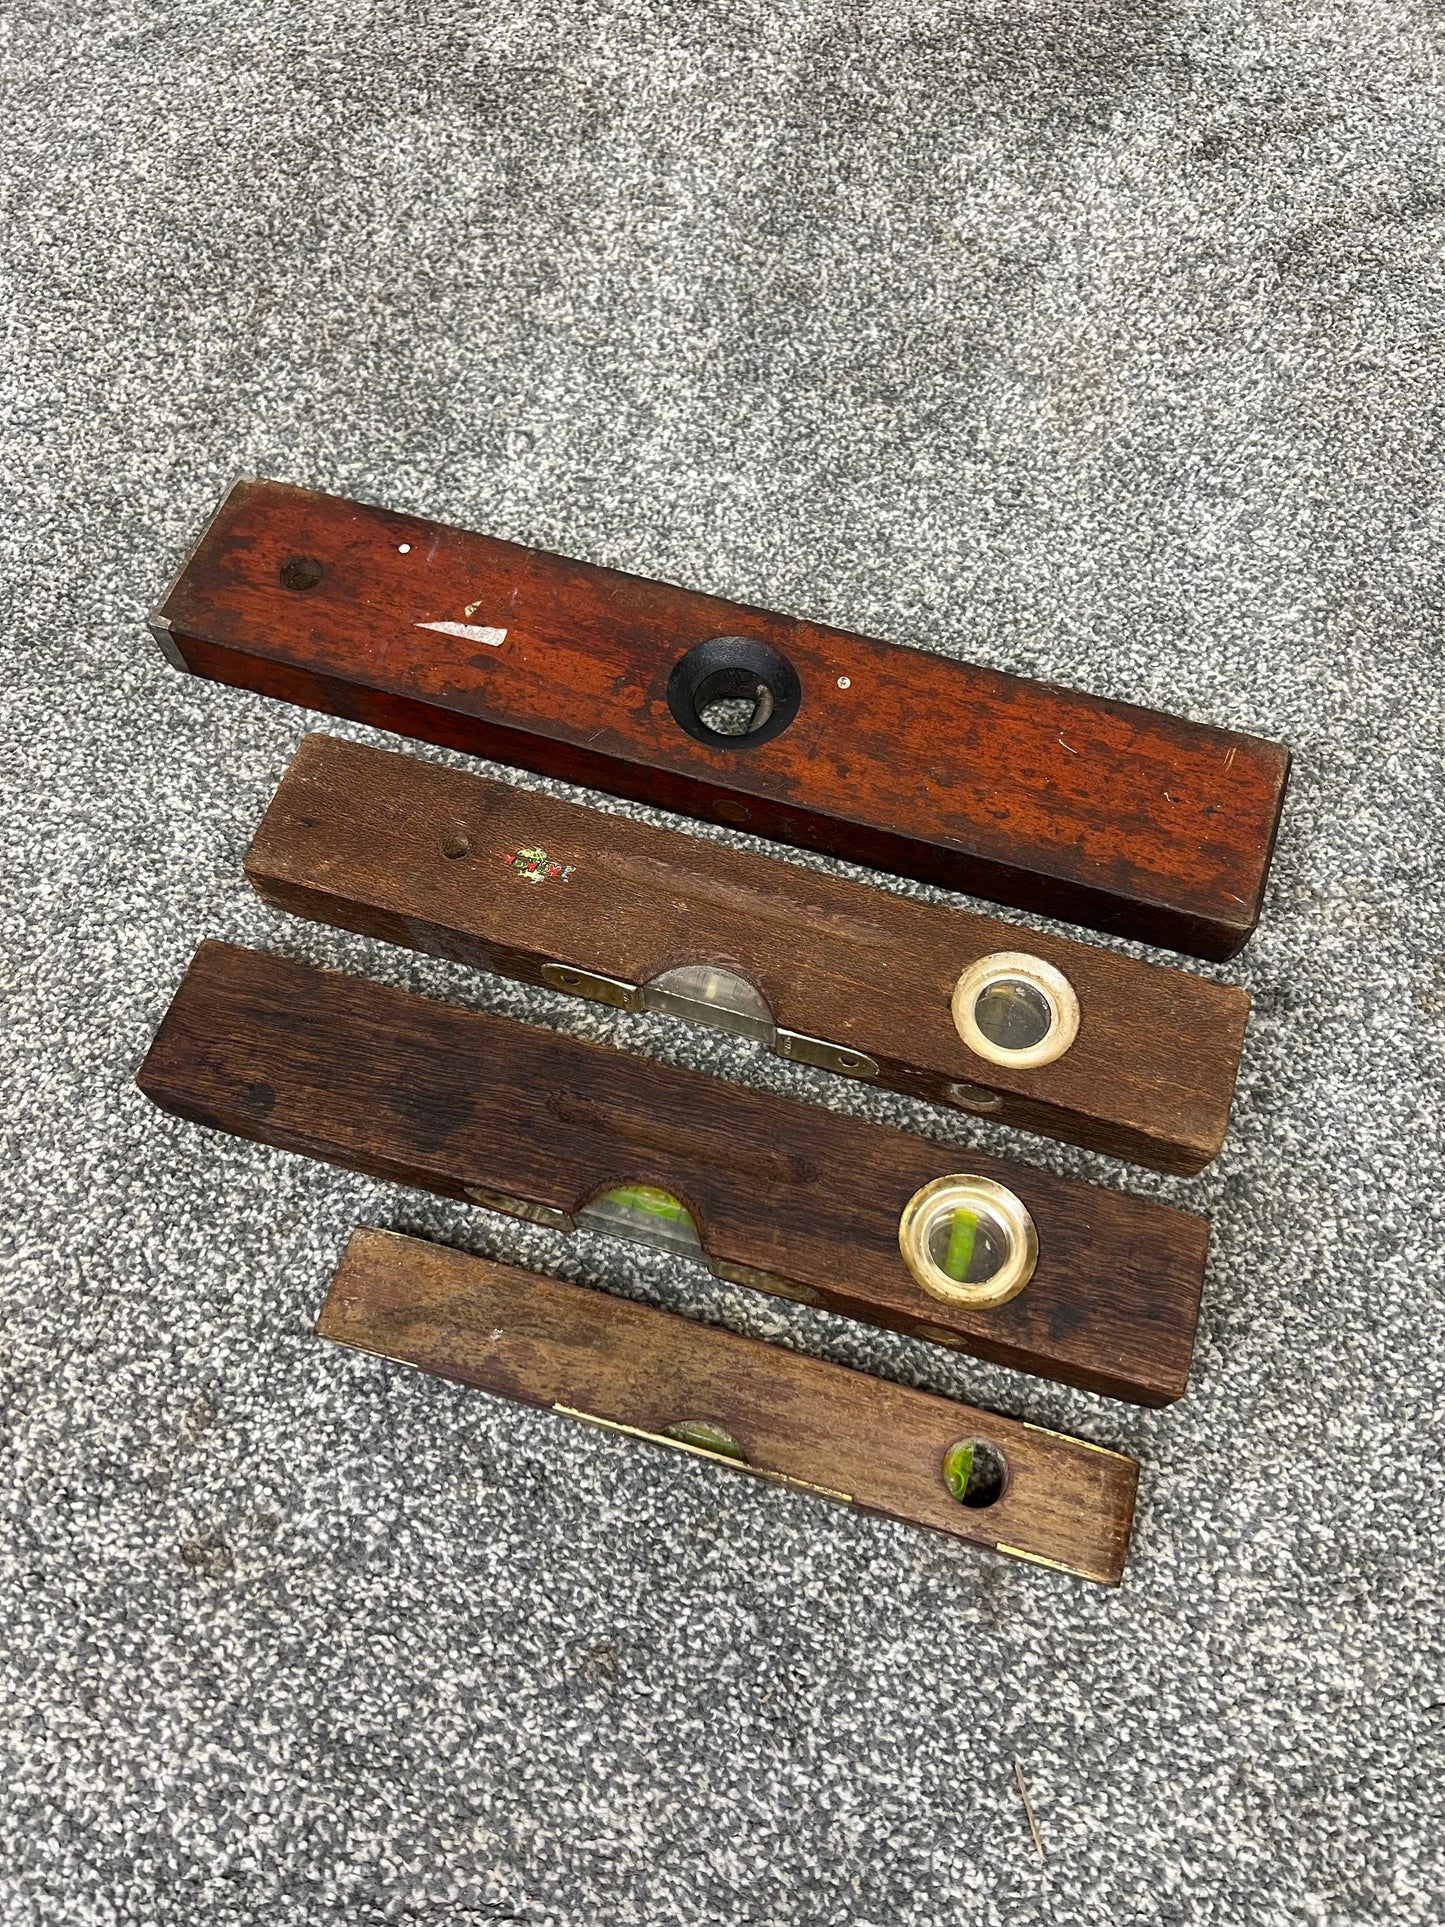 4x Vintage Wood & Brass Spirit Levels Job Lot Vintage Workshop Garage Tools